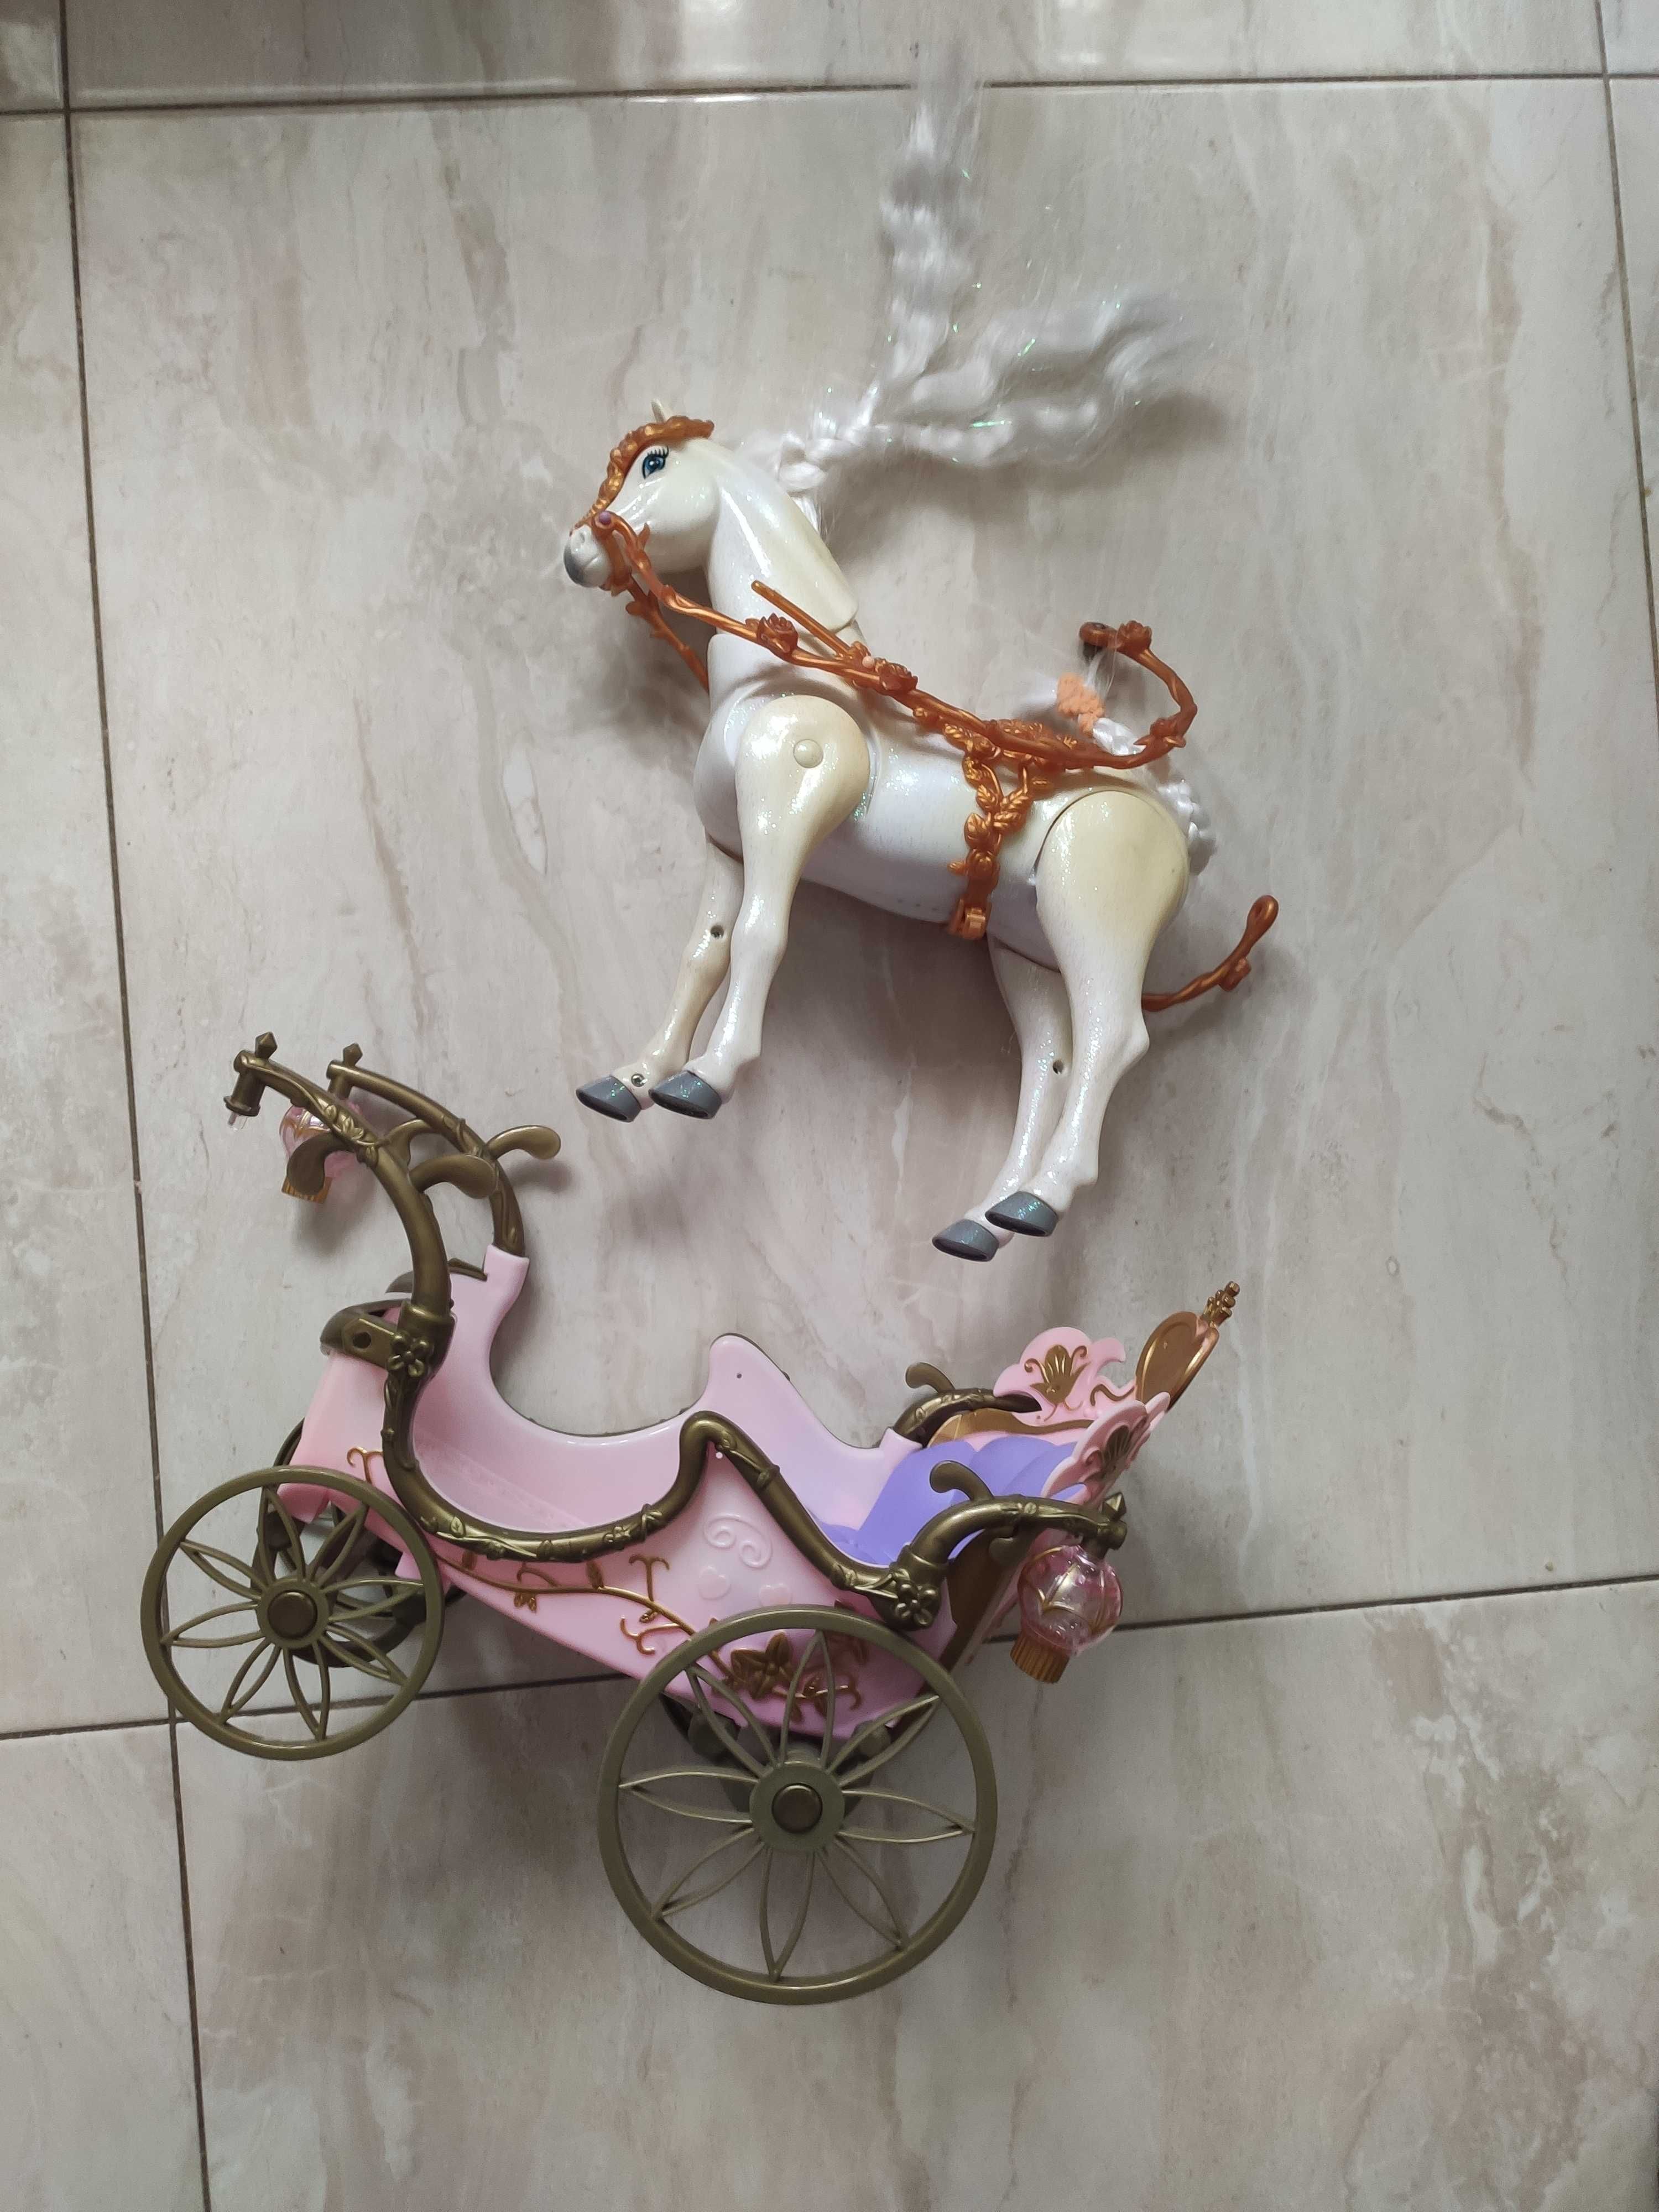 Karoca dla lalek Barbie z chodzącym koniem.